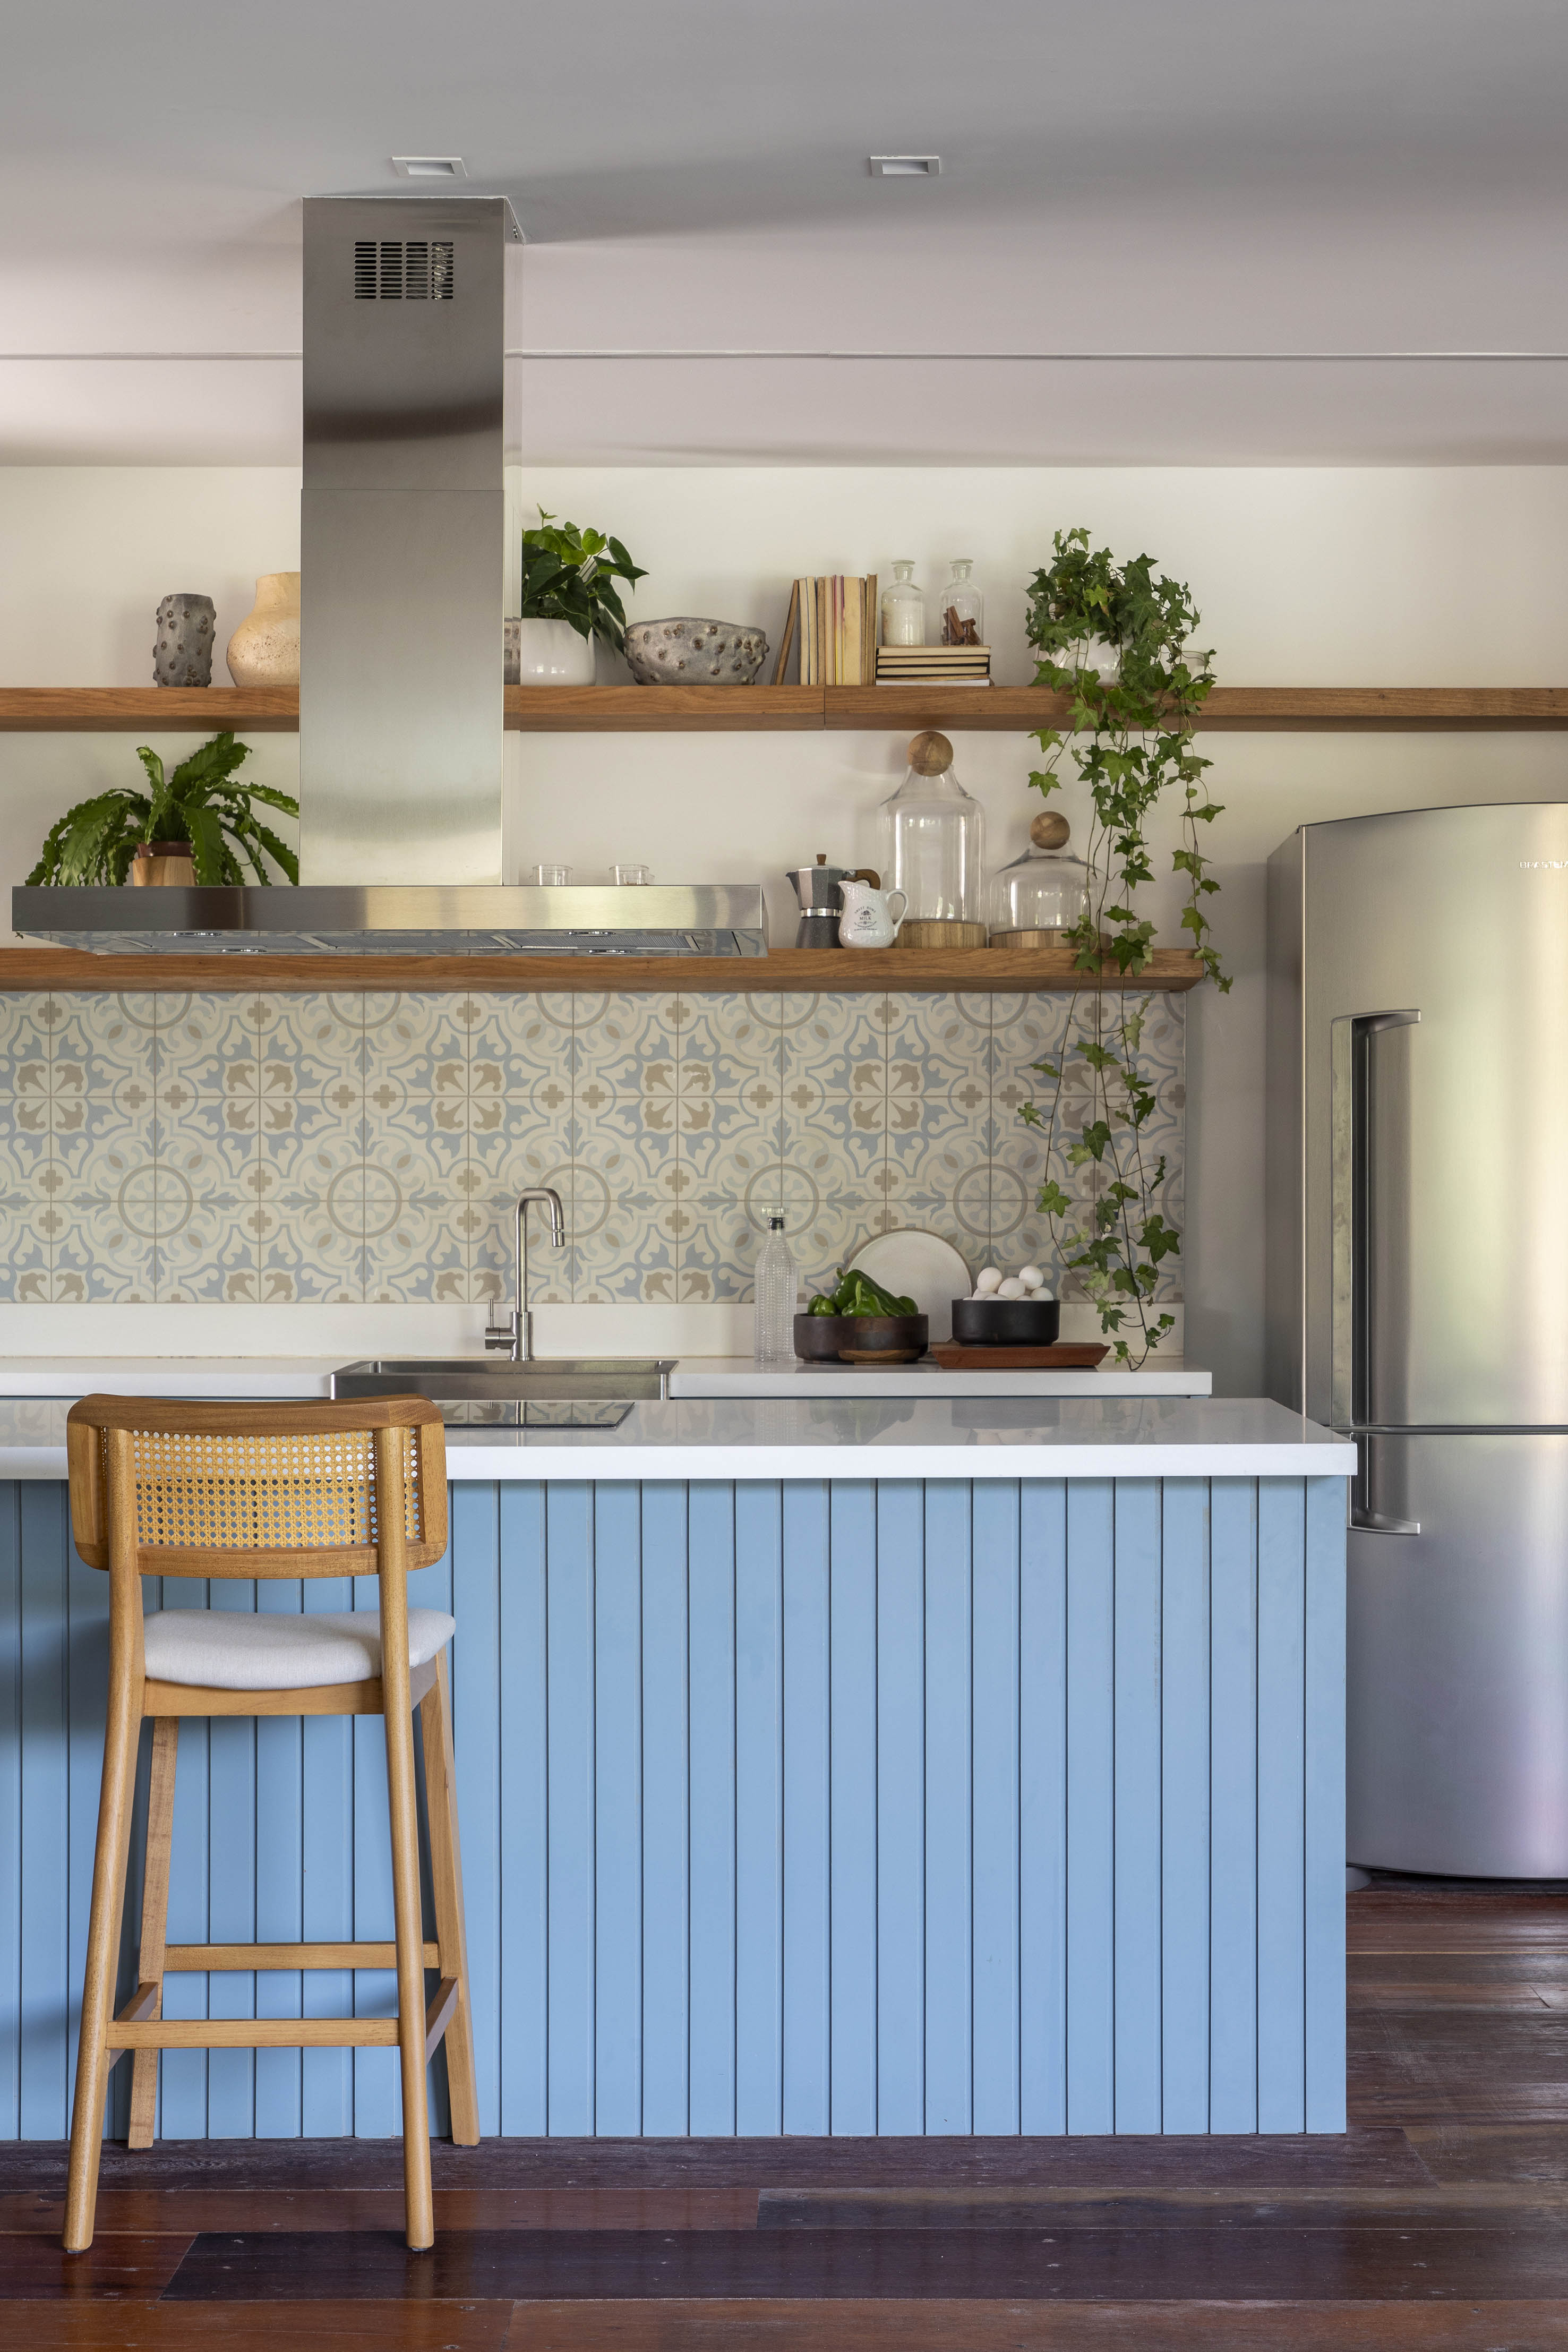 Tons naturais e base neutra marcam casa de campo com cozinha provençal. Projeto de João Panaggio. Na foto, cozinha em estilo provençal, azulejos, ilha com bancada branca e revestimento azul ripado.